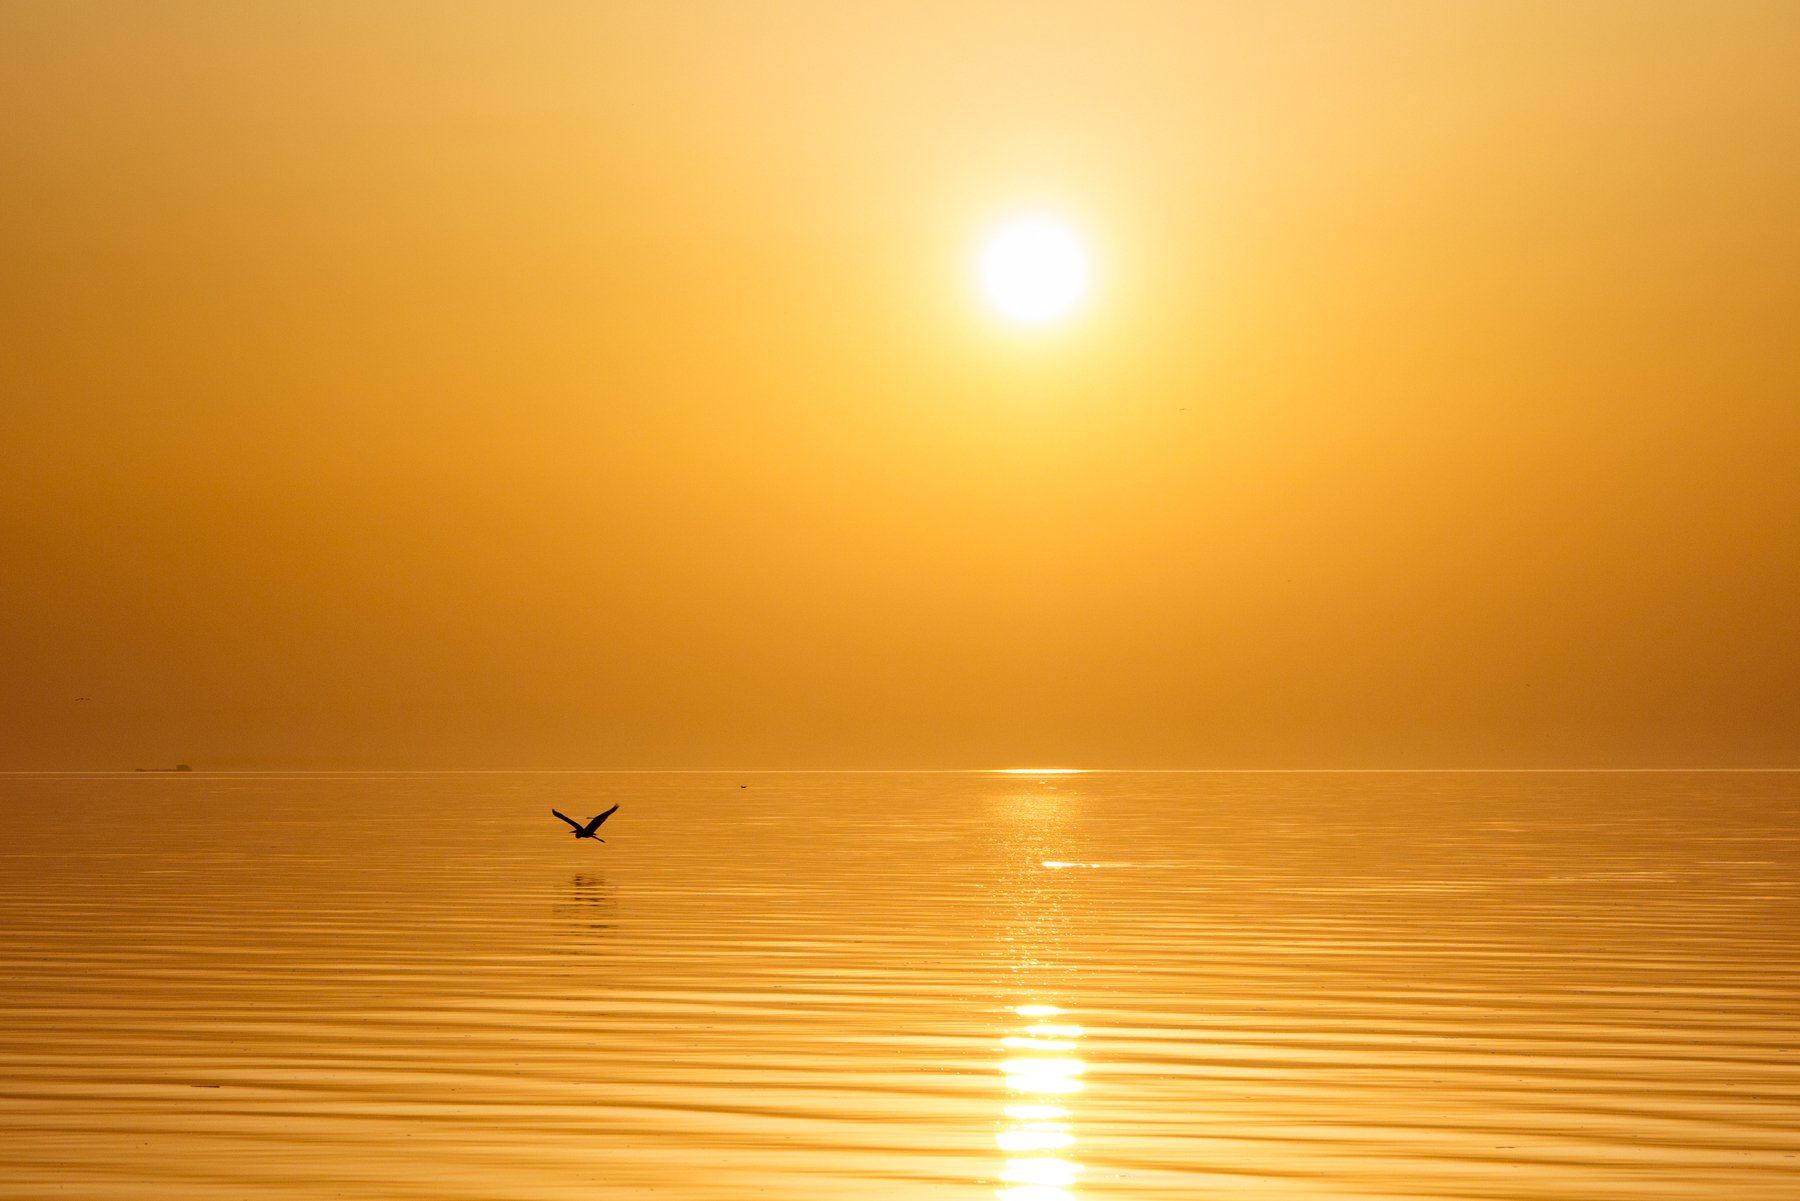 закат, море, солнце, вода, птица, золото, отражение, пейзаж минимализм, Арнольд